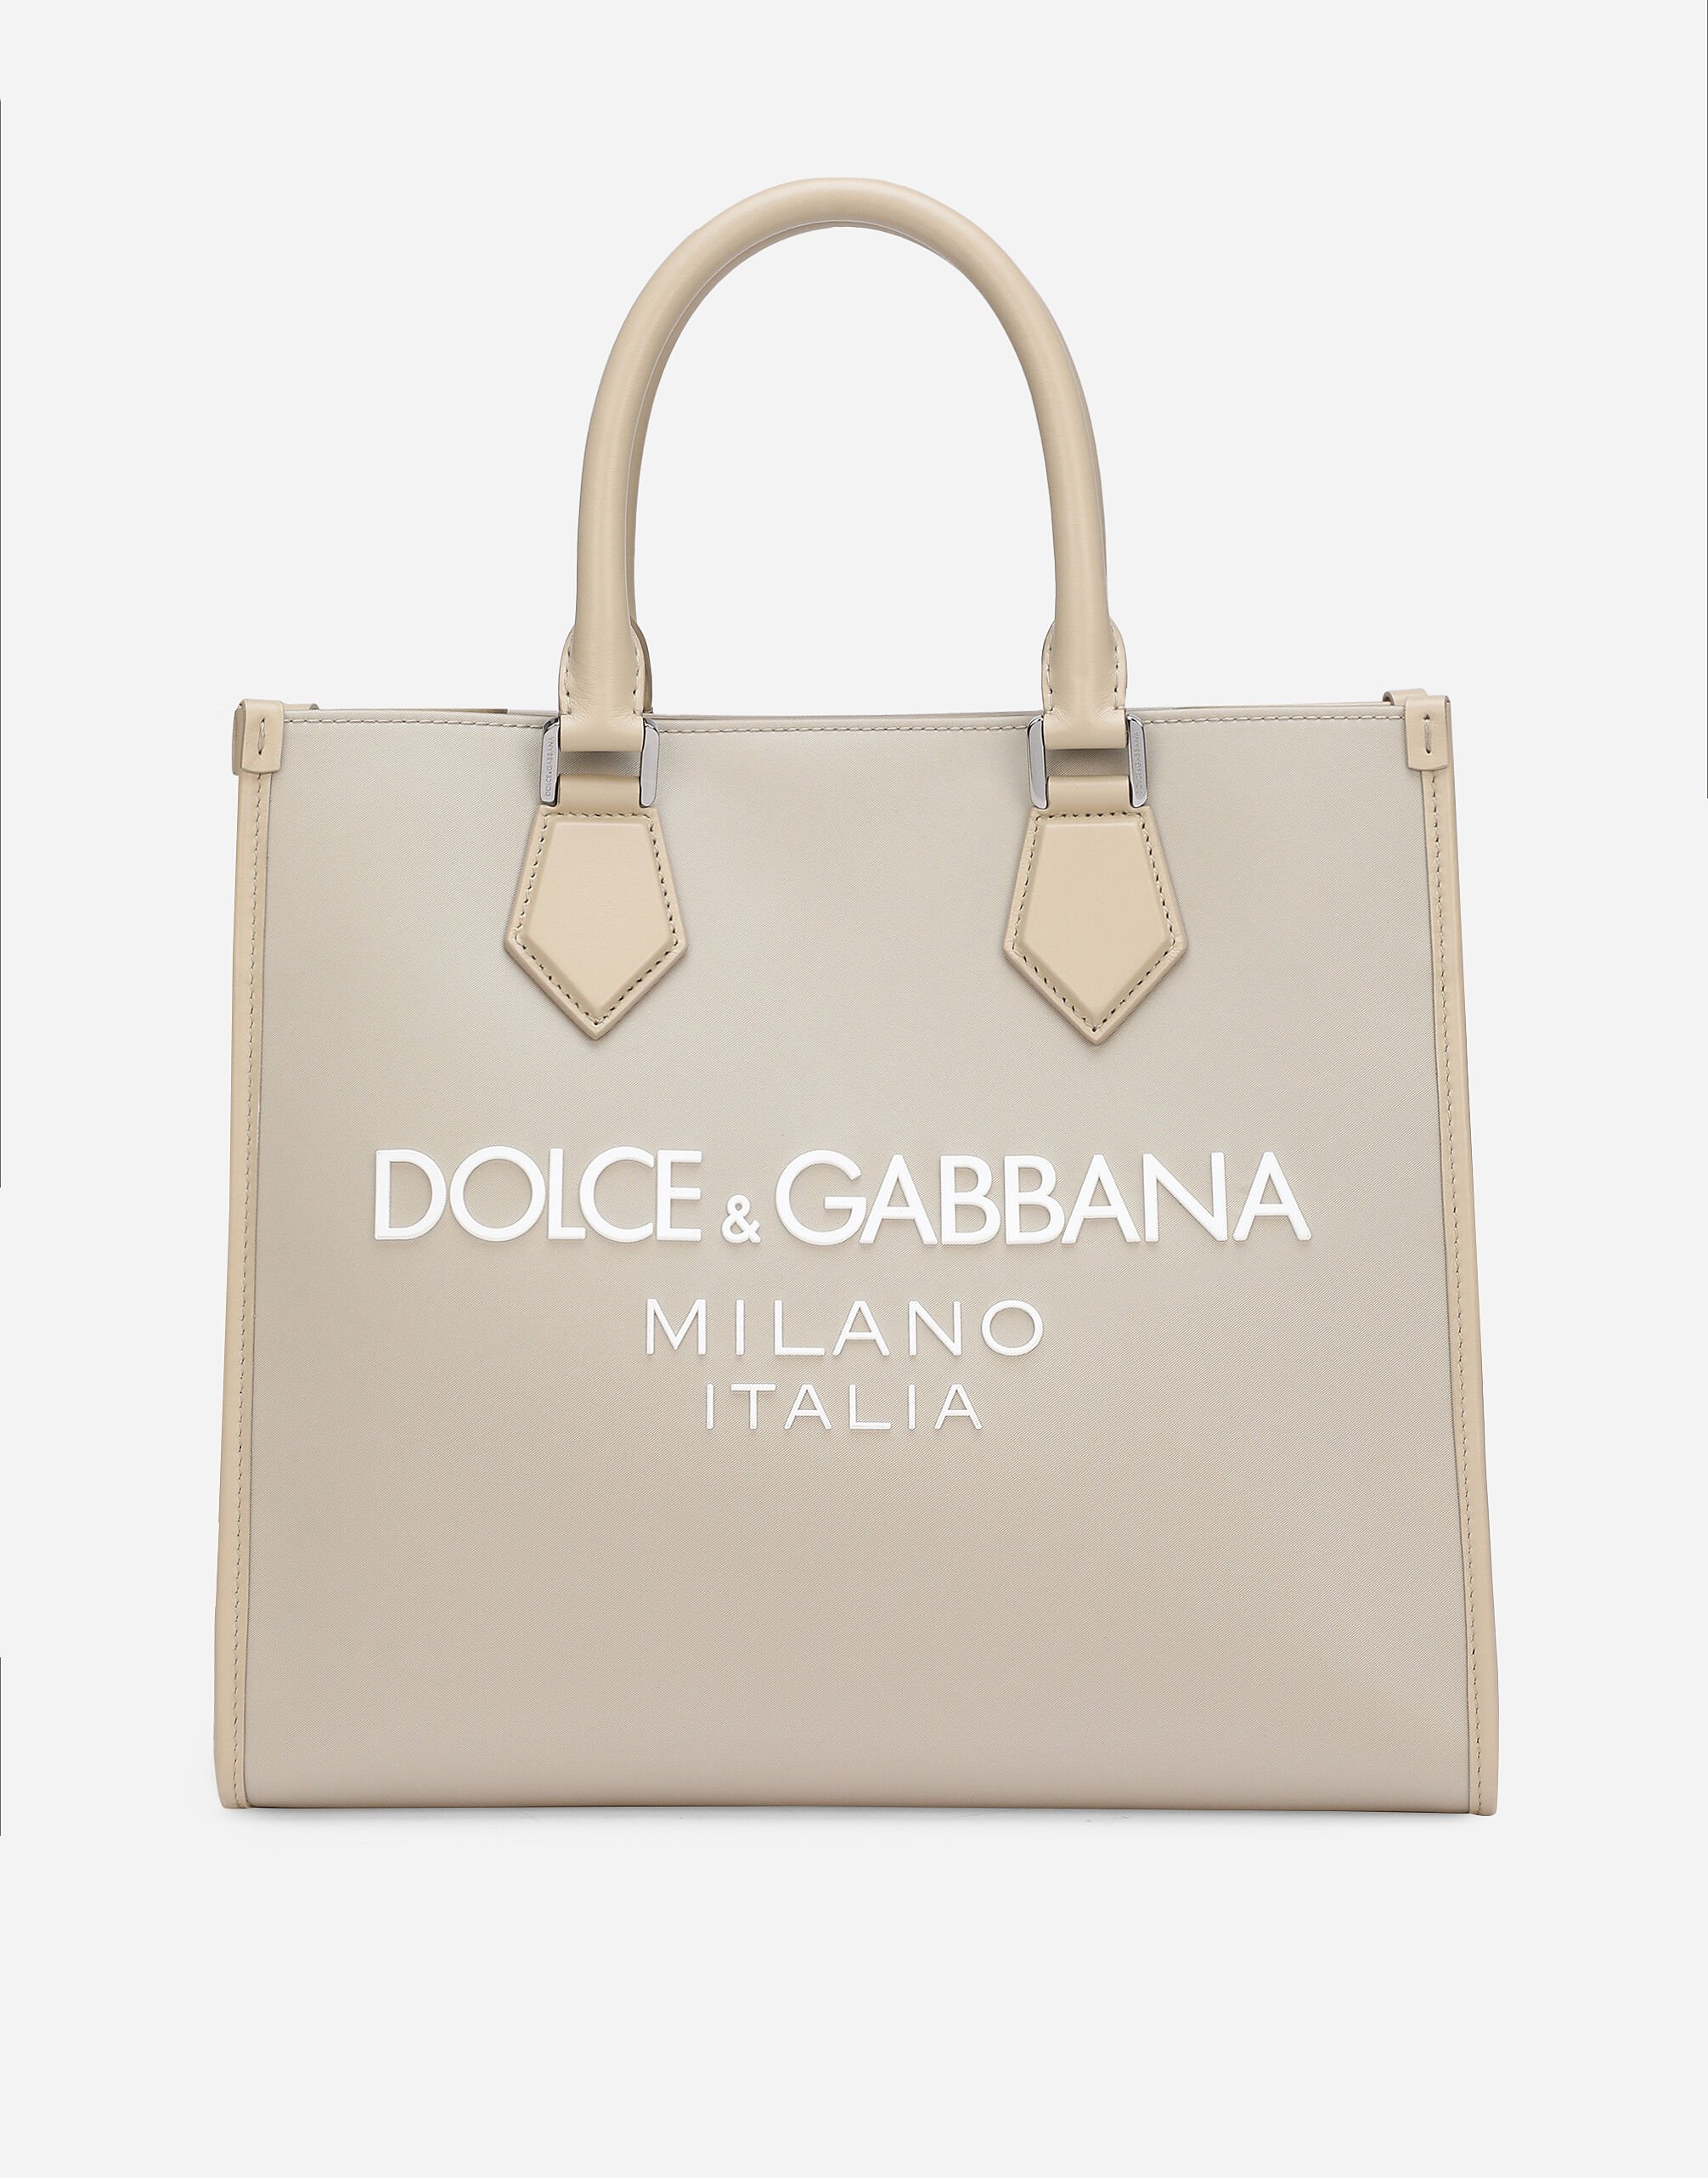 Dolce & Gabbana ショッピングバッグ スモール ナイロン ラバライズドロゴ プリ BM2274AQ061